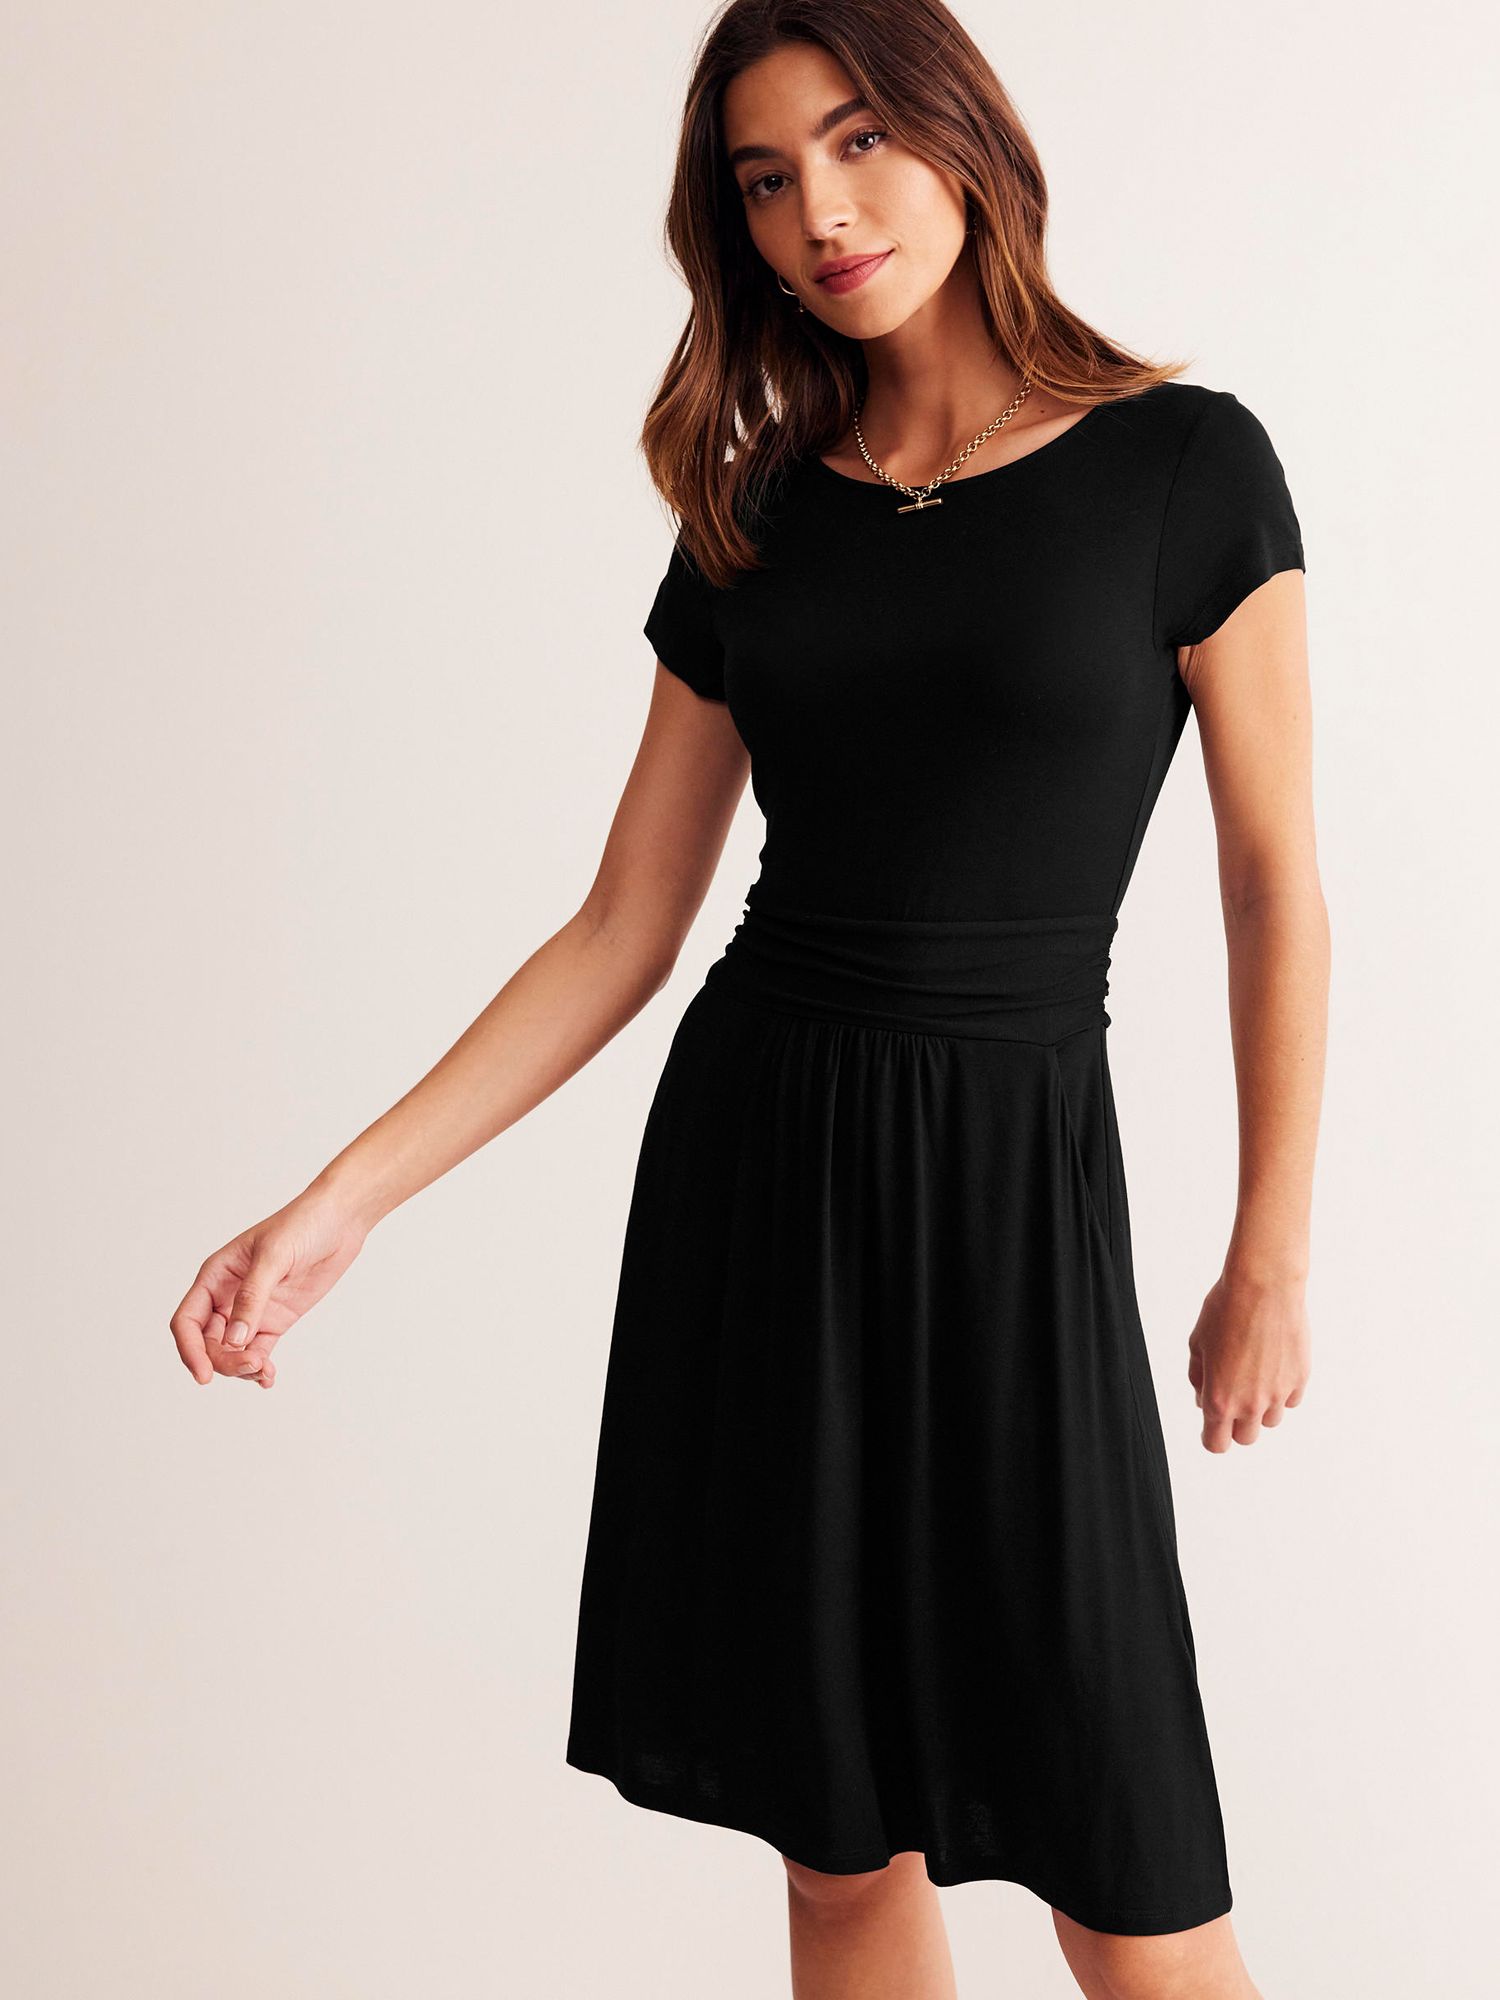 Boden Amelie Flared Dress, Black, 8